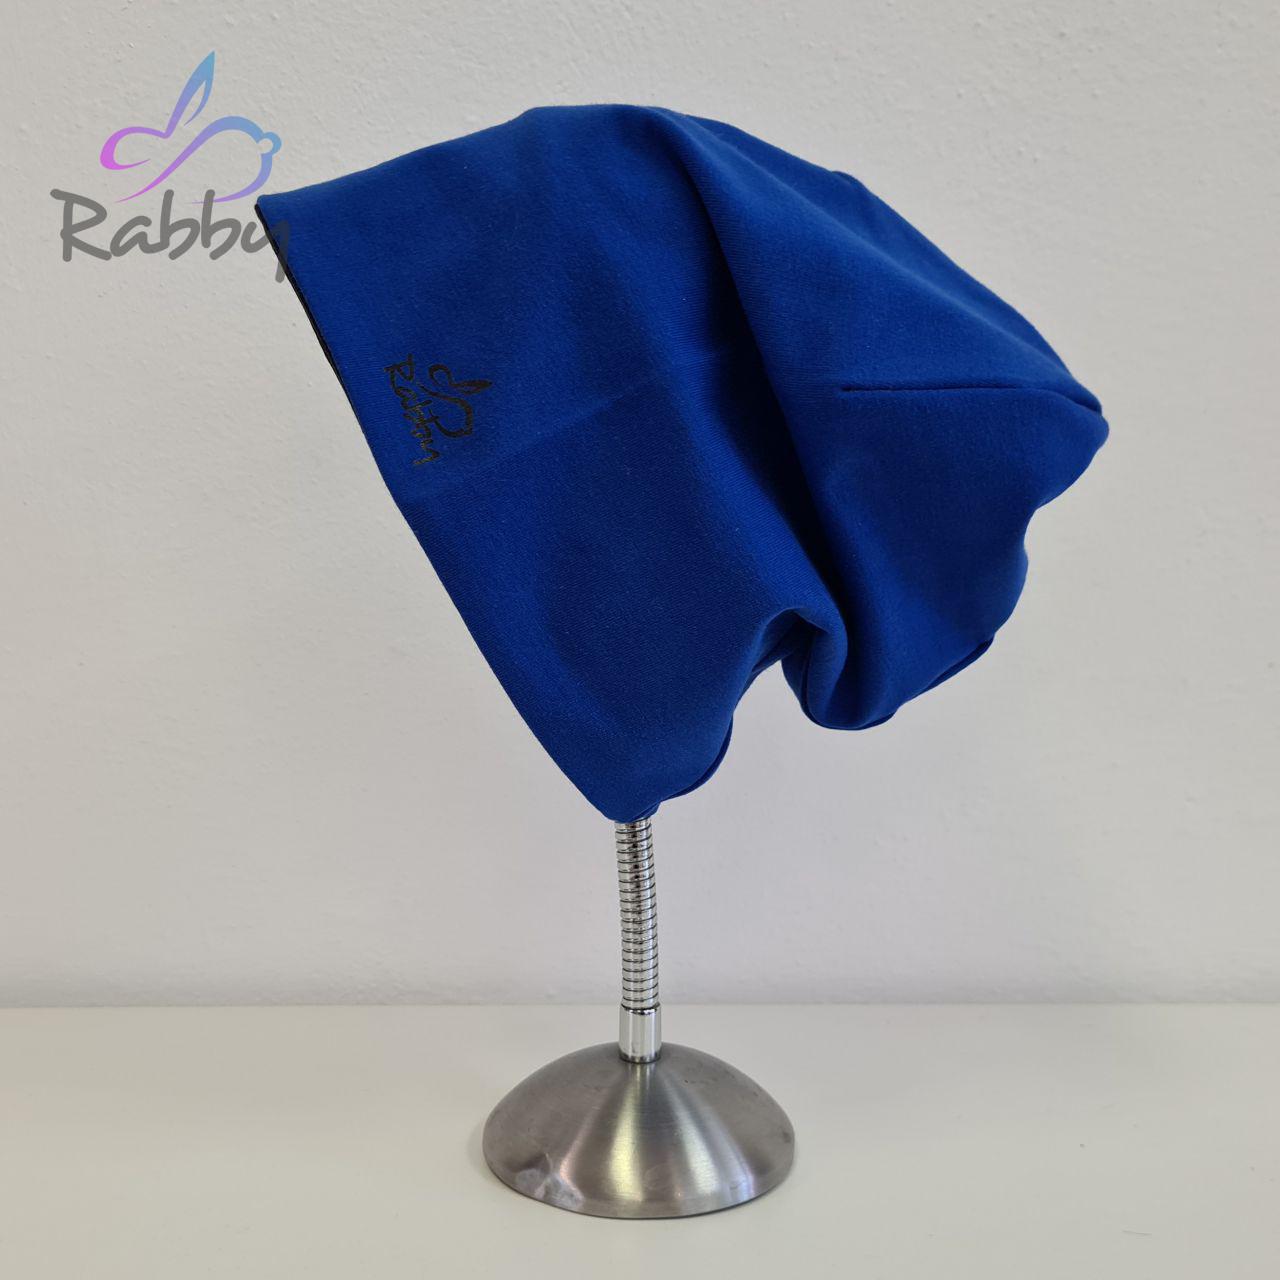 Homeless čepice pro dospělé královská modrá vel. 58 (obvod hlavy 57-60 cm)